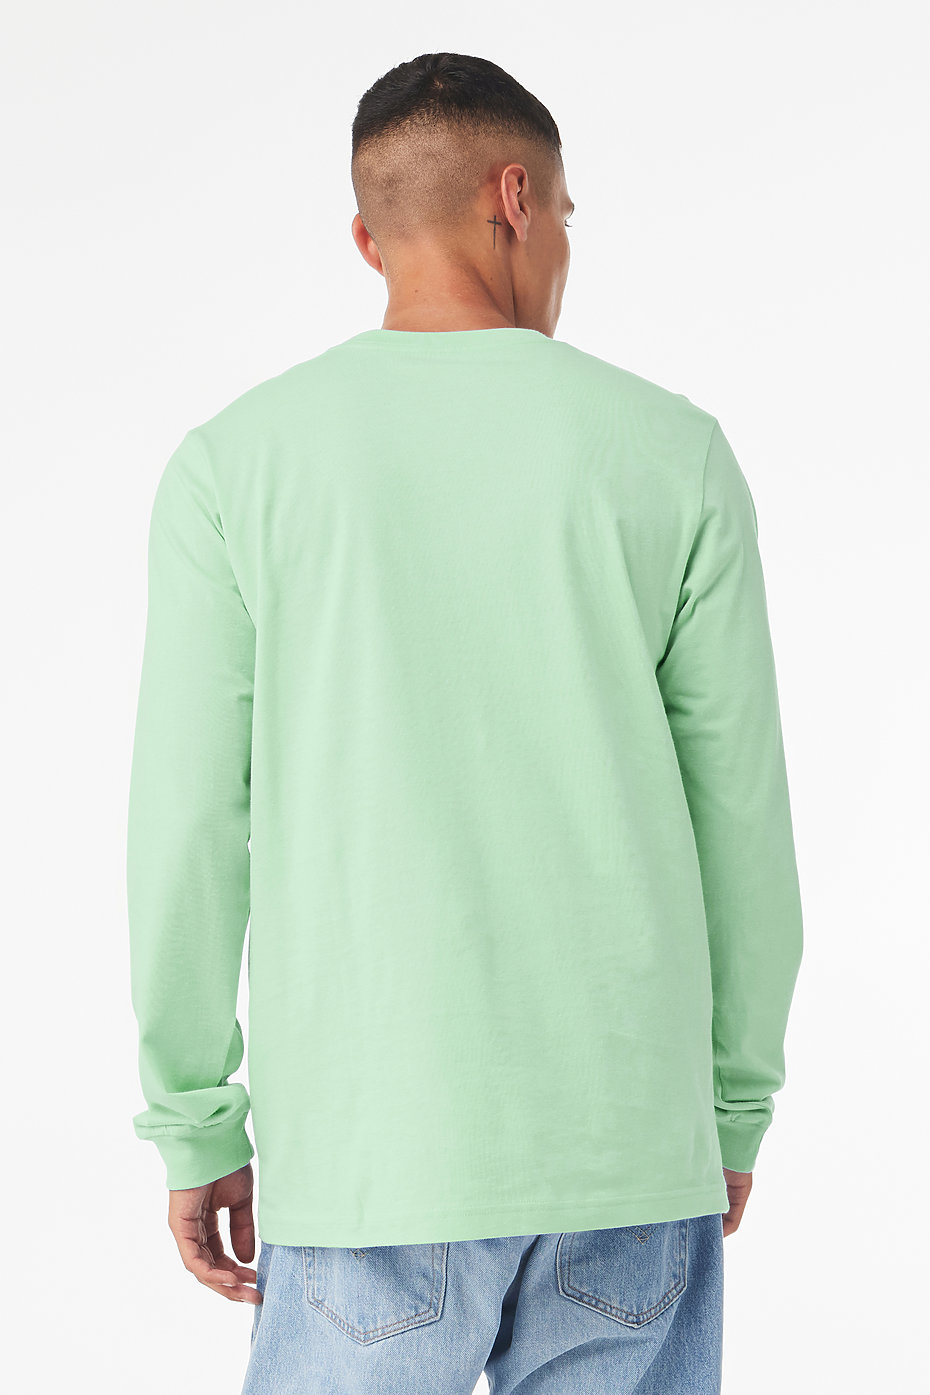 WOMEN FASHION Shirts & T-shirts Shirt Print discount 50% Purple/Green S Zara Shirt 